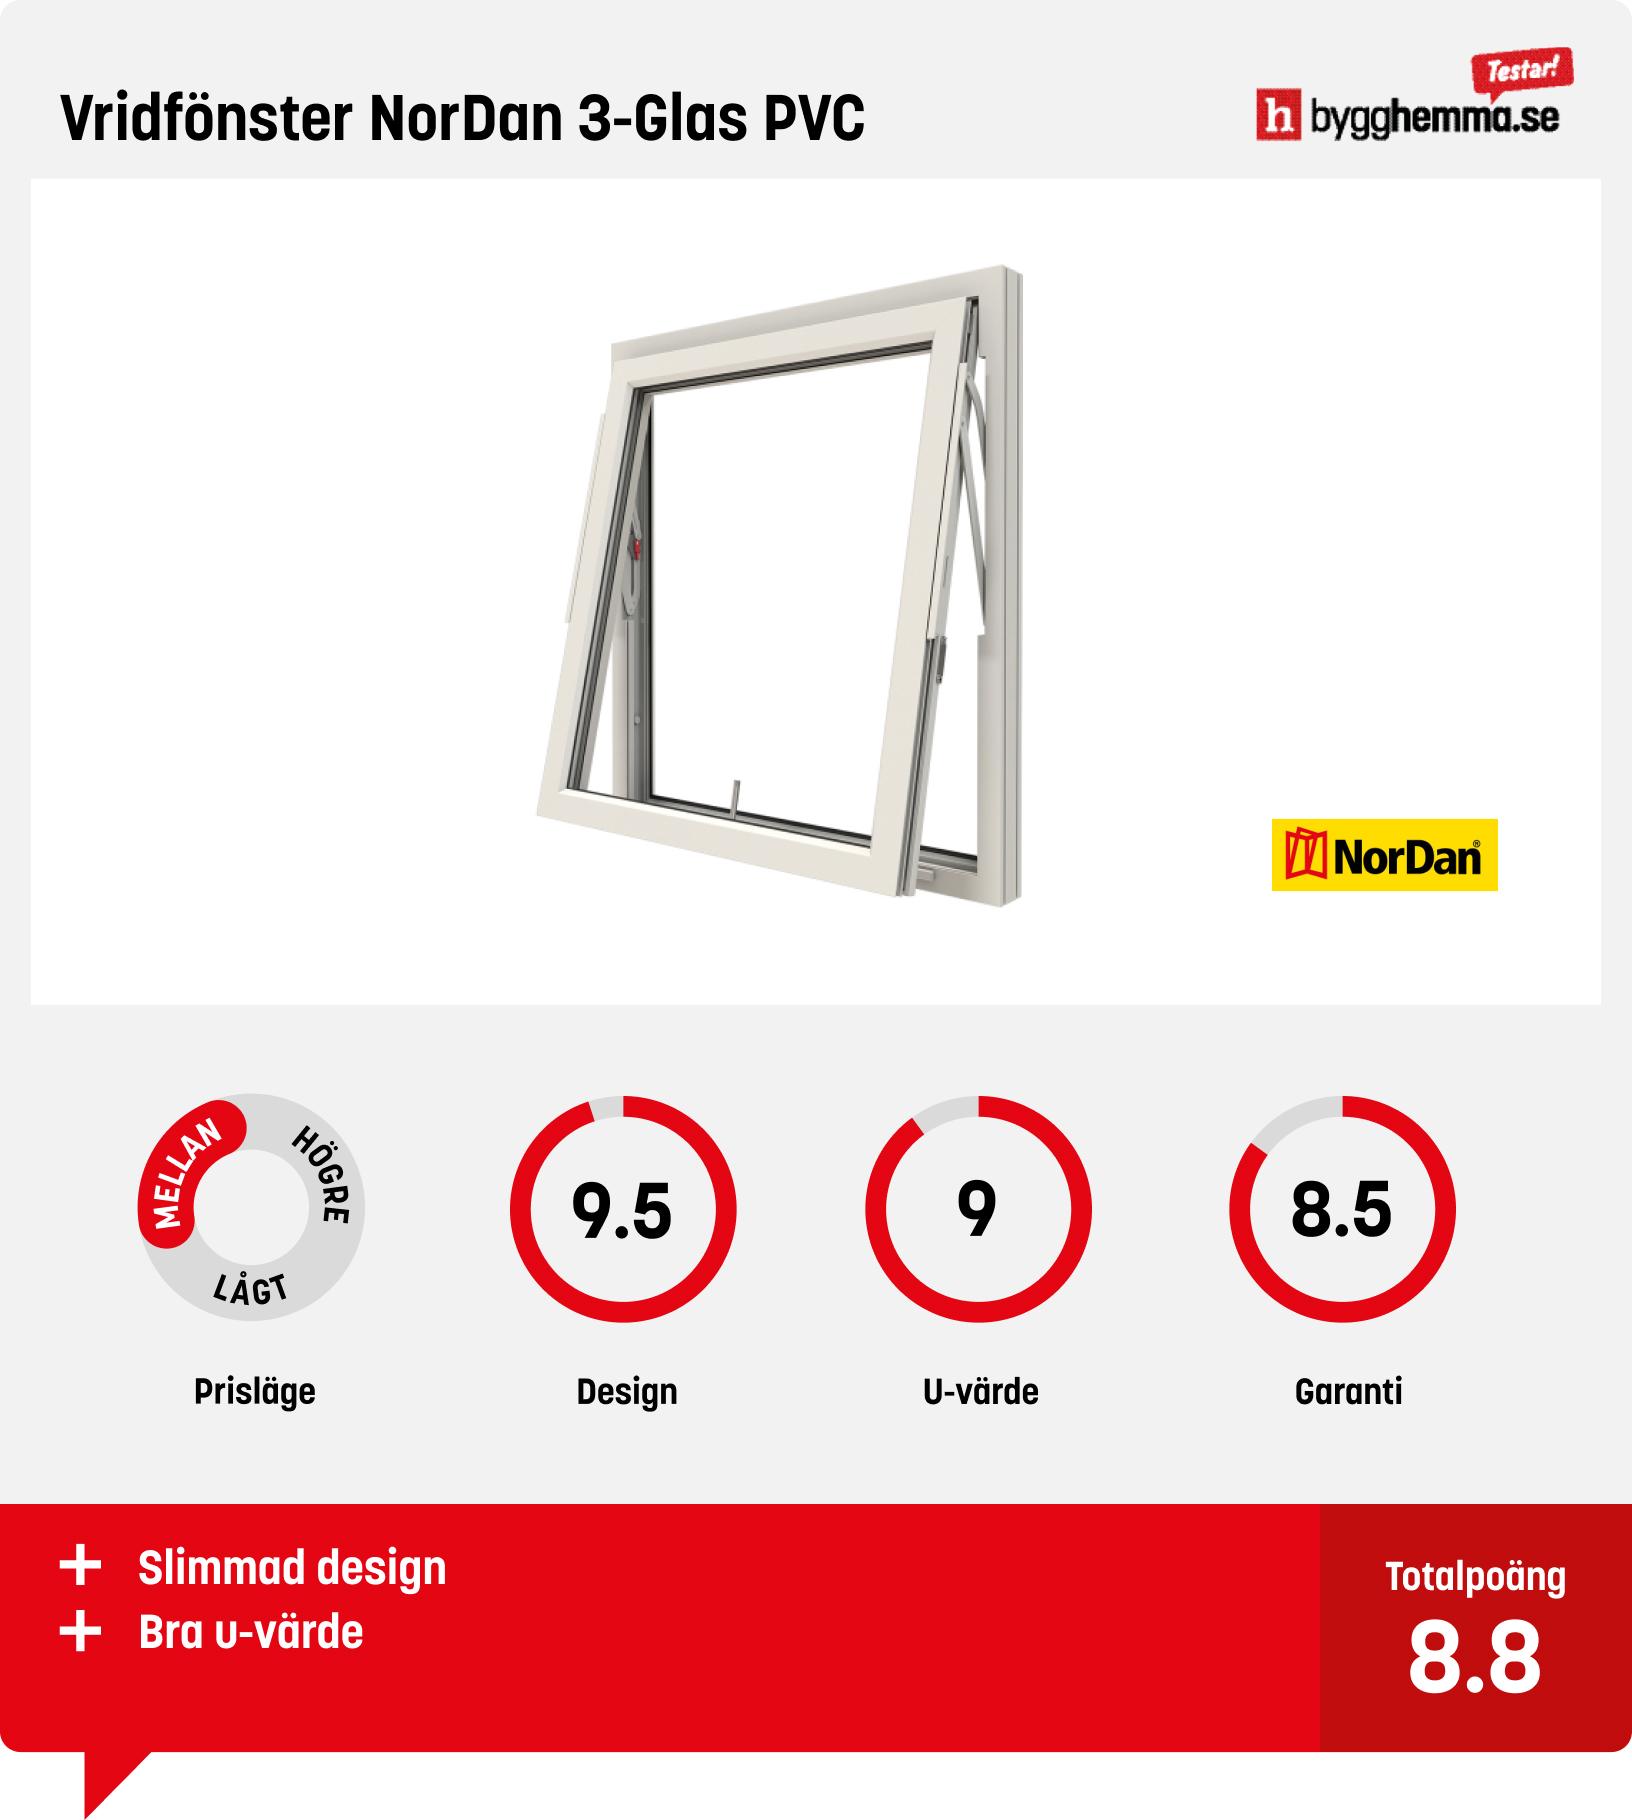 Bästa PVC-fönster - Vridfönster NorDan 3-Glas PVC